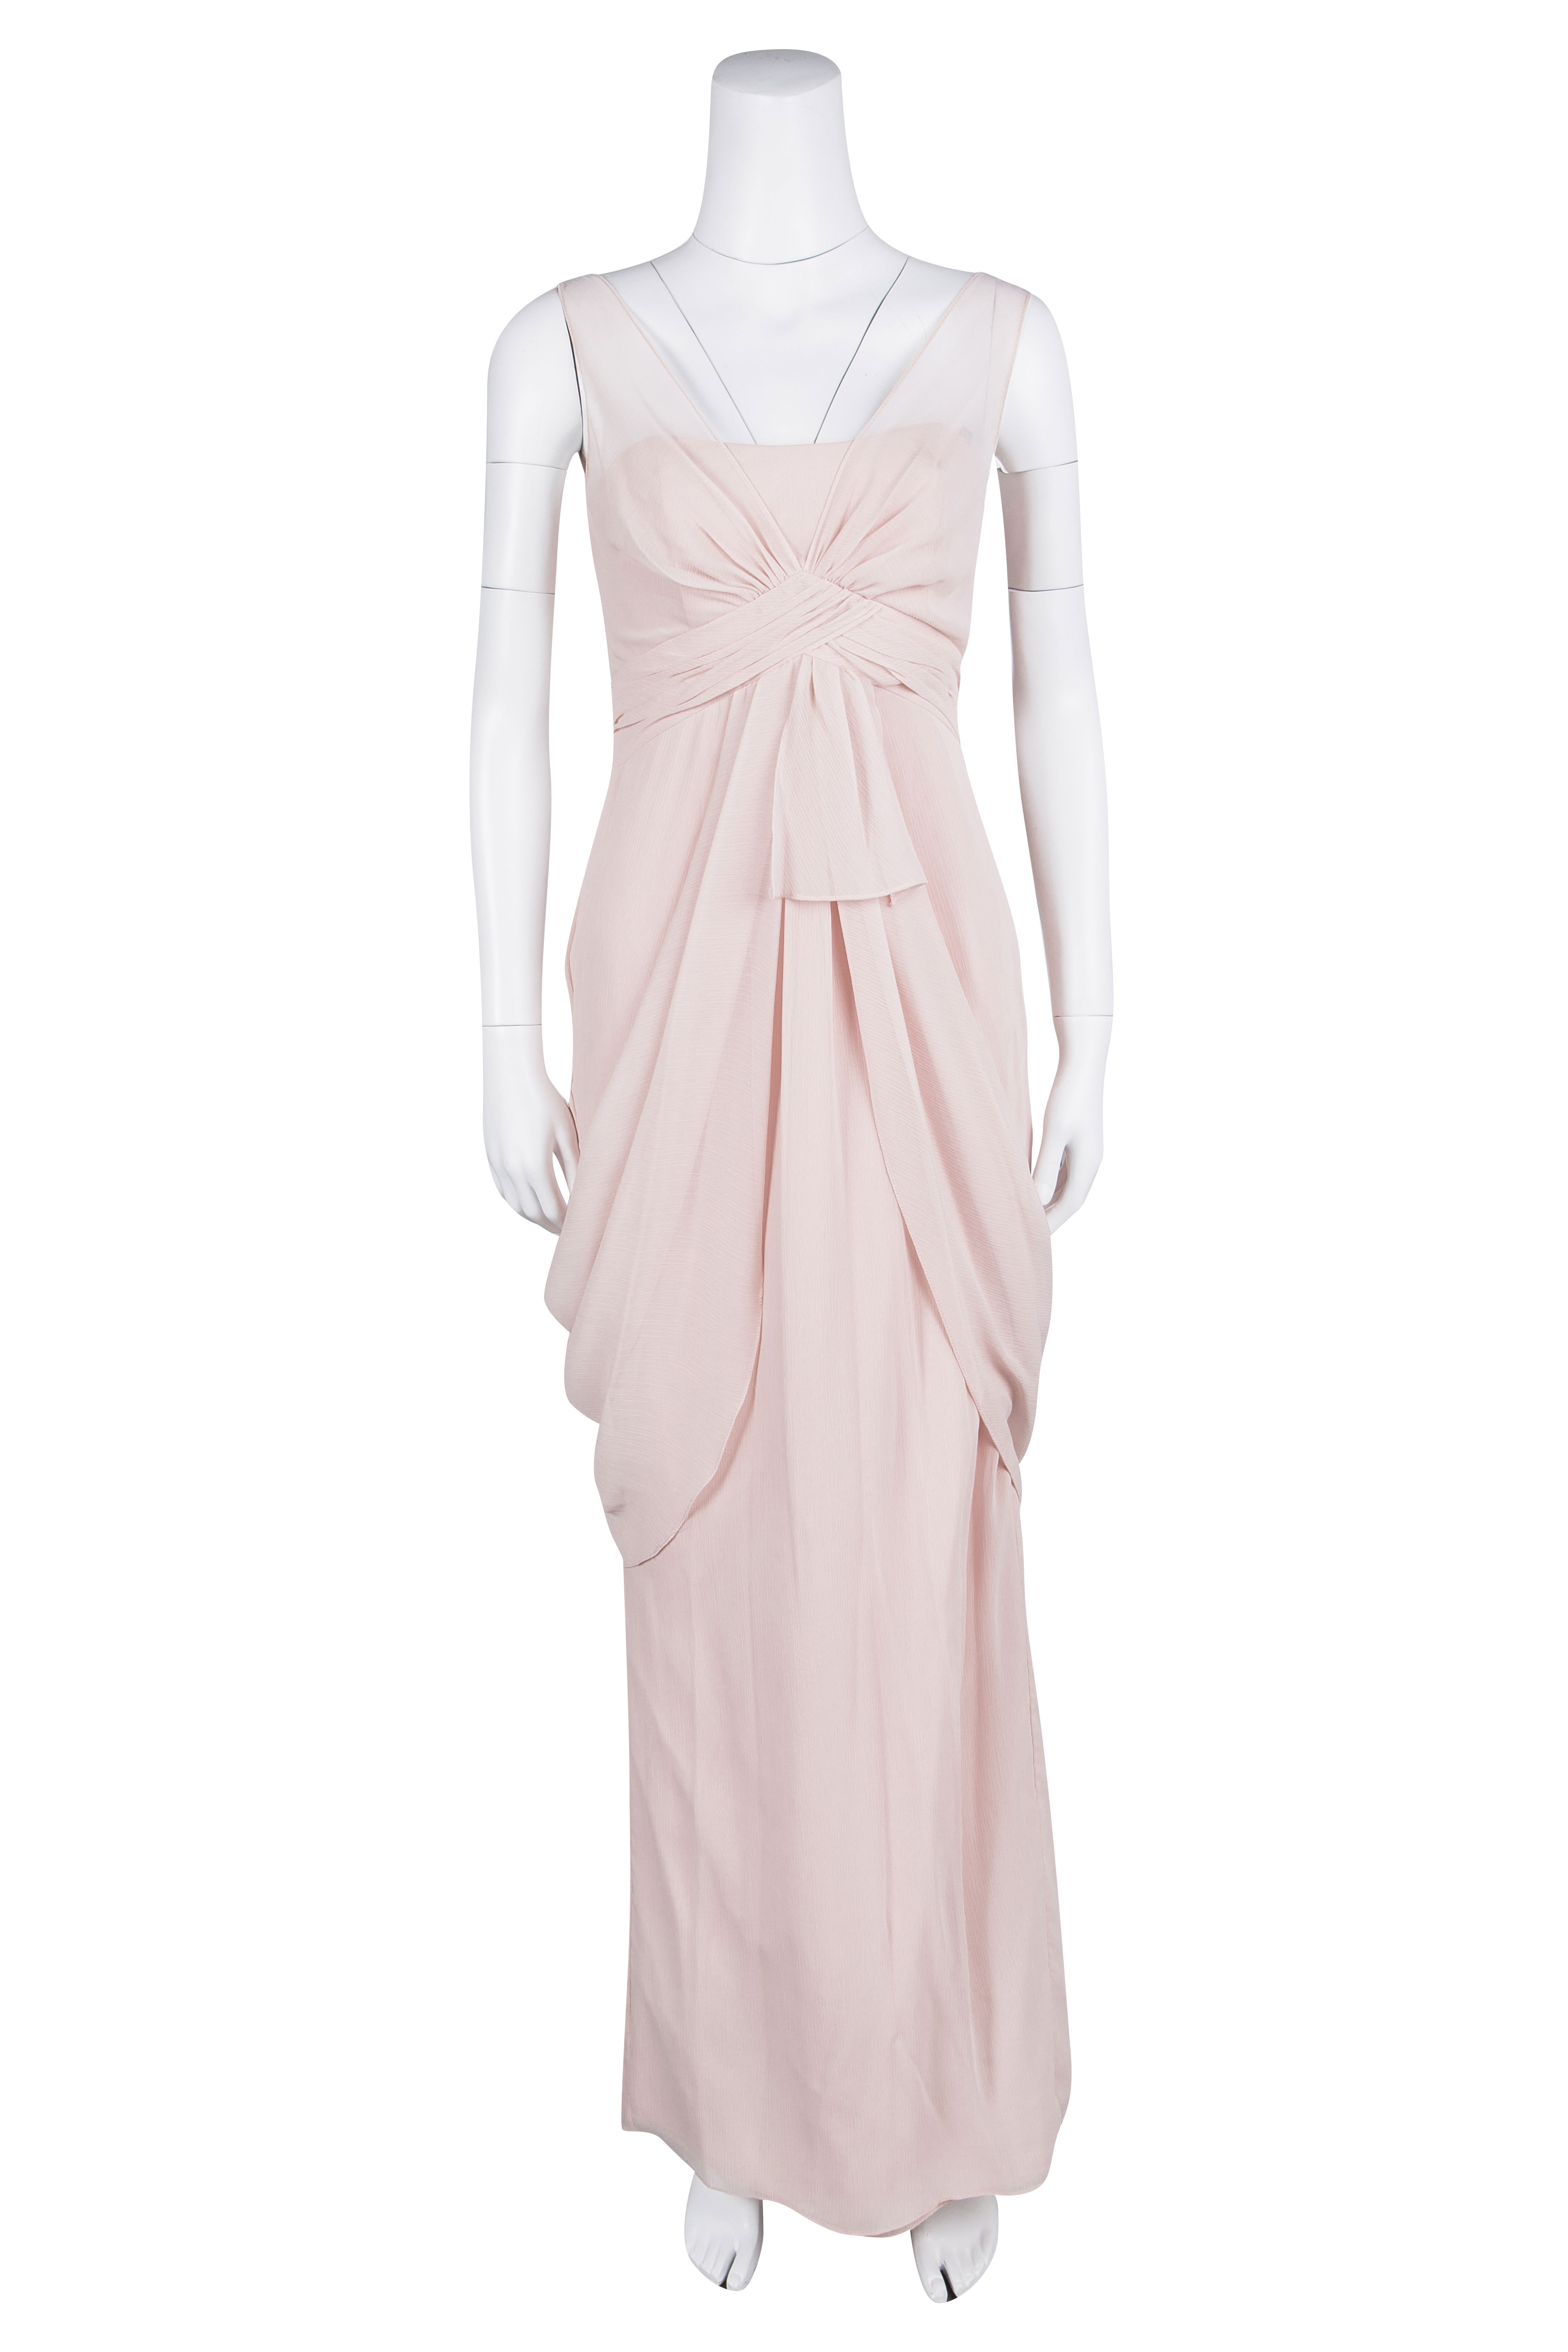 

White by Vera Wang Pale Pink Crinkled Chiffon Draped Maxi Dress